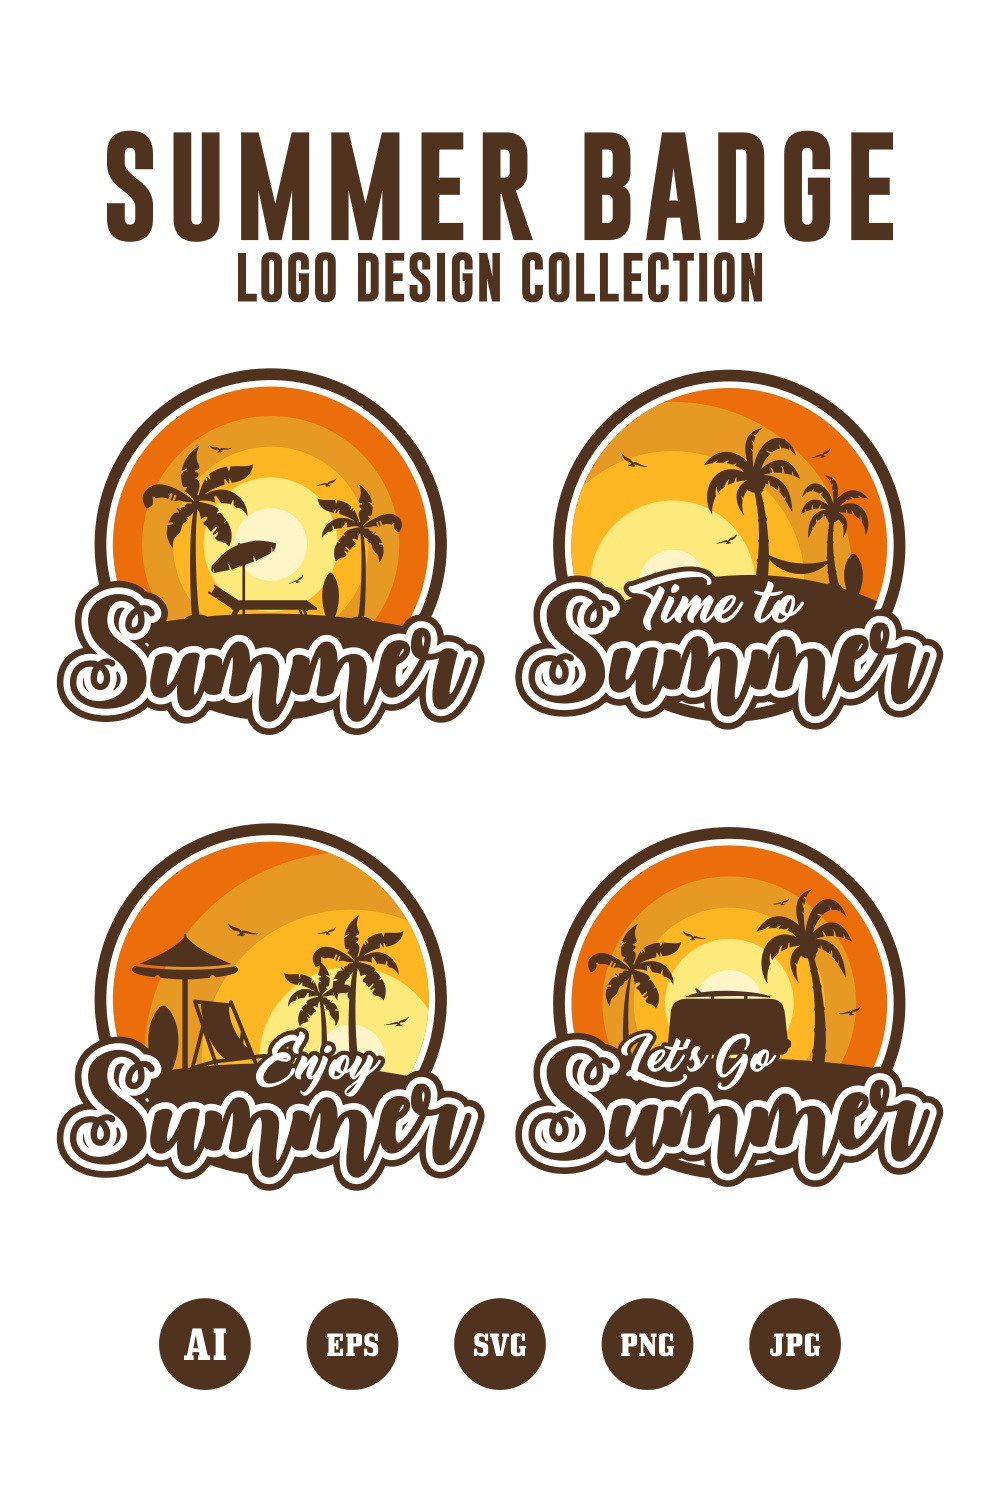 Set Summer badge logo design collection - $4 pinterest preview image.